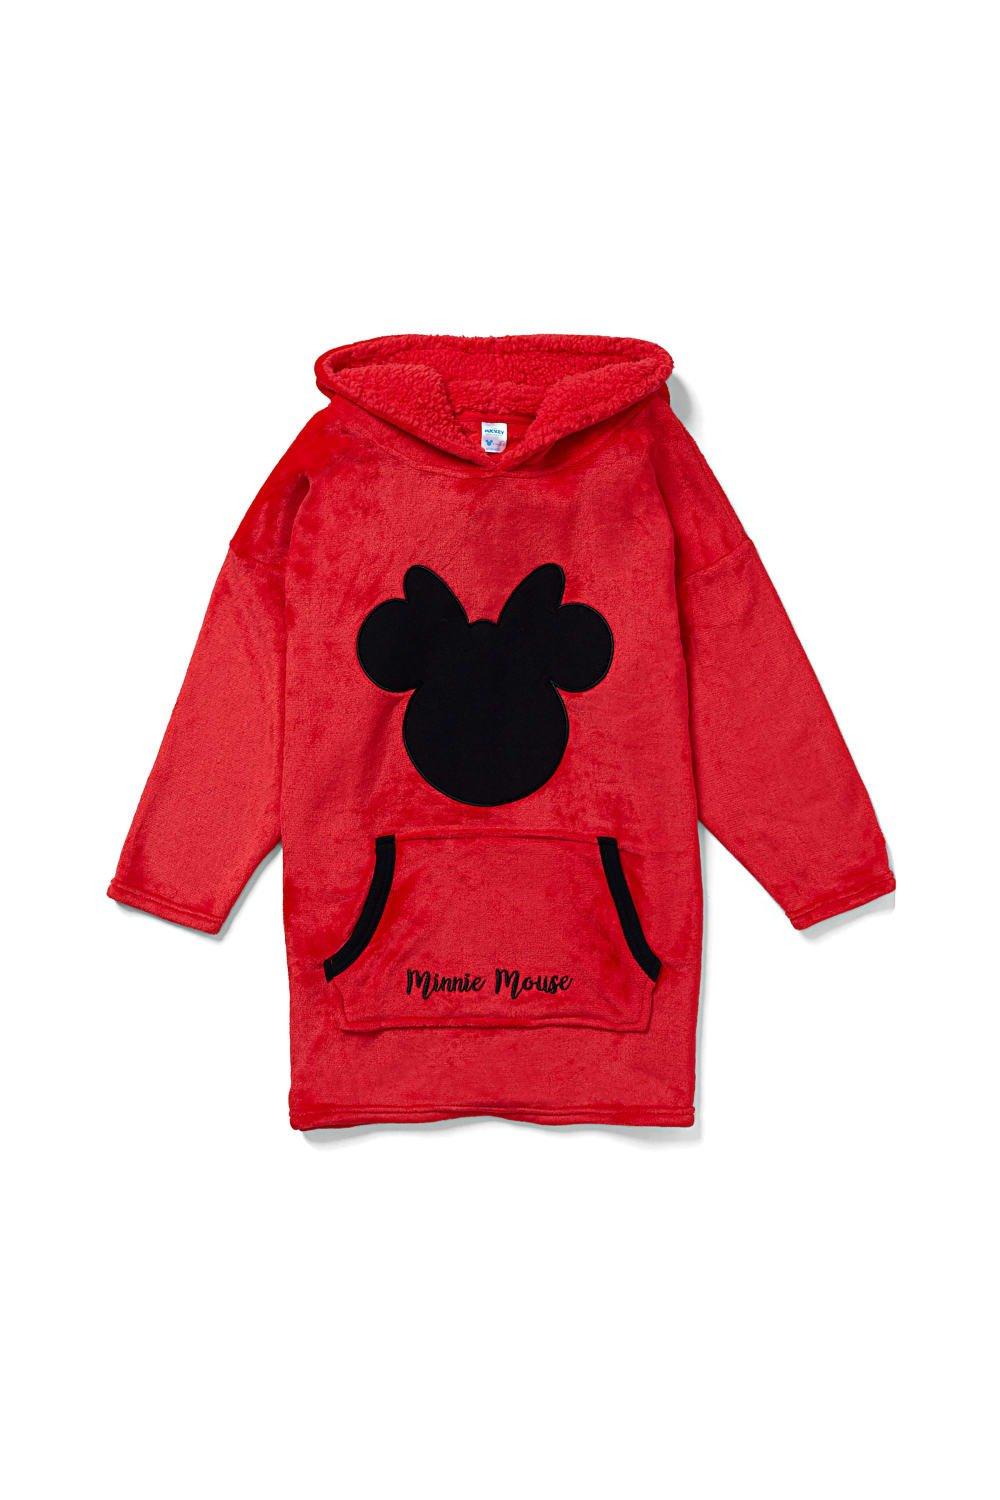 Объемное флисовое одеяло с капюшоном и Минни Маус, одежда для дома Disney, красный ланч бокс минни маус электрическая кукла